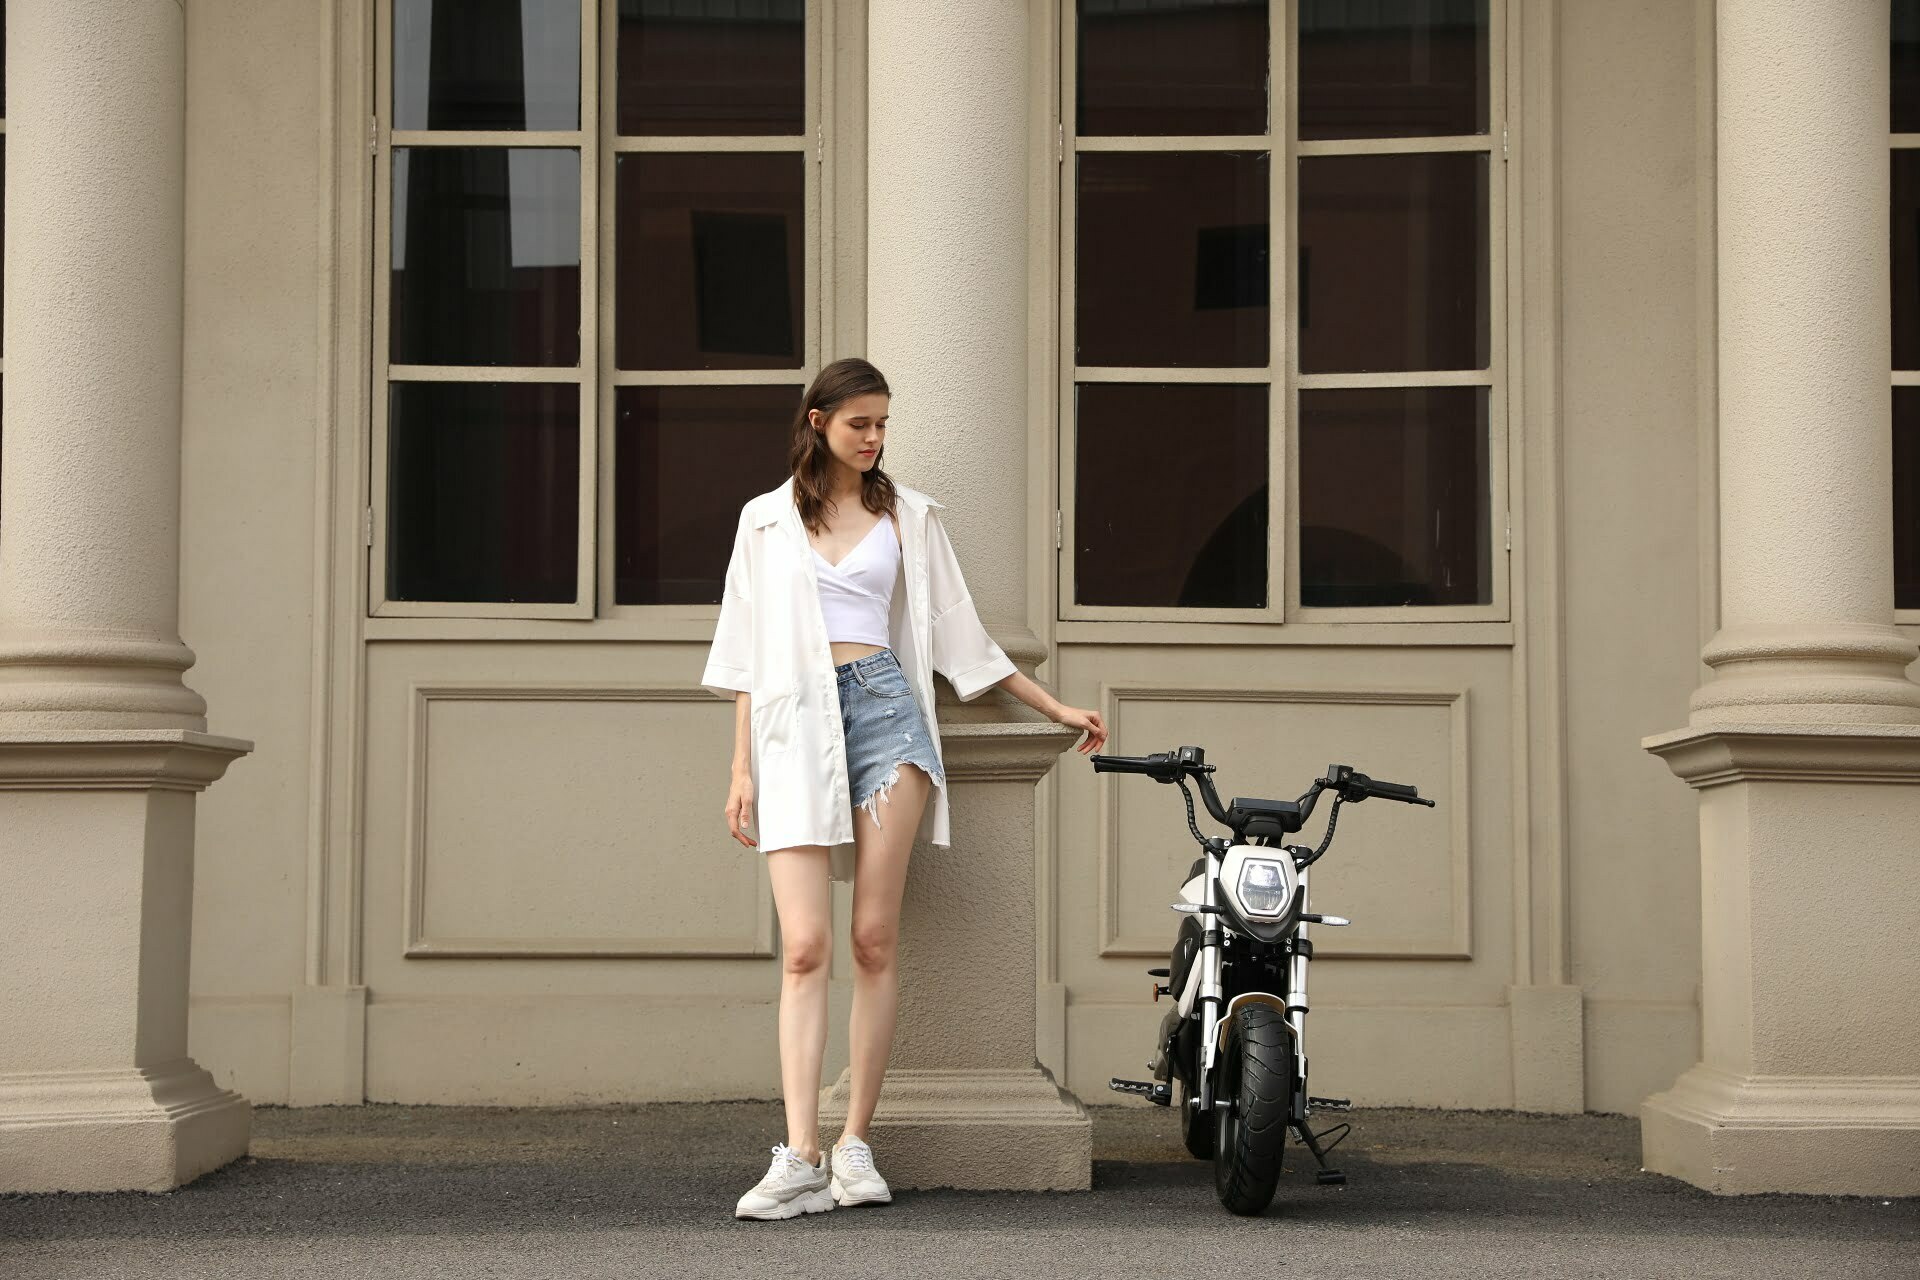 Mini Bike Elektryczny Tromox Mino - poznaj nowy wymiar miejskiej mobilności w najlepszym stylu